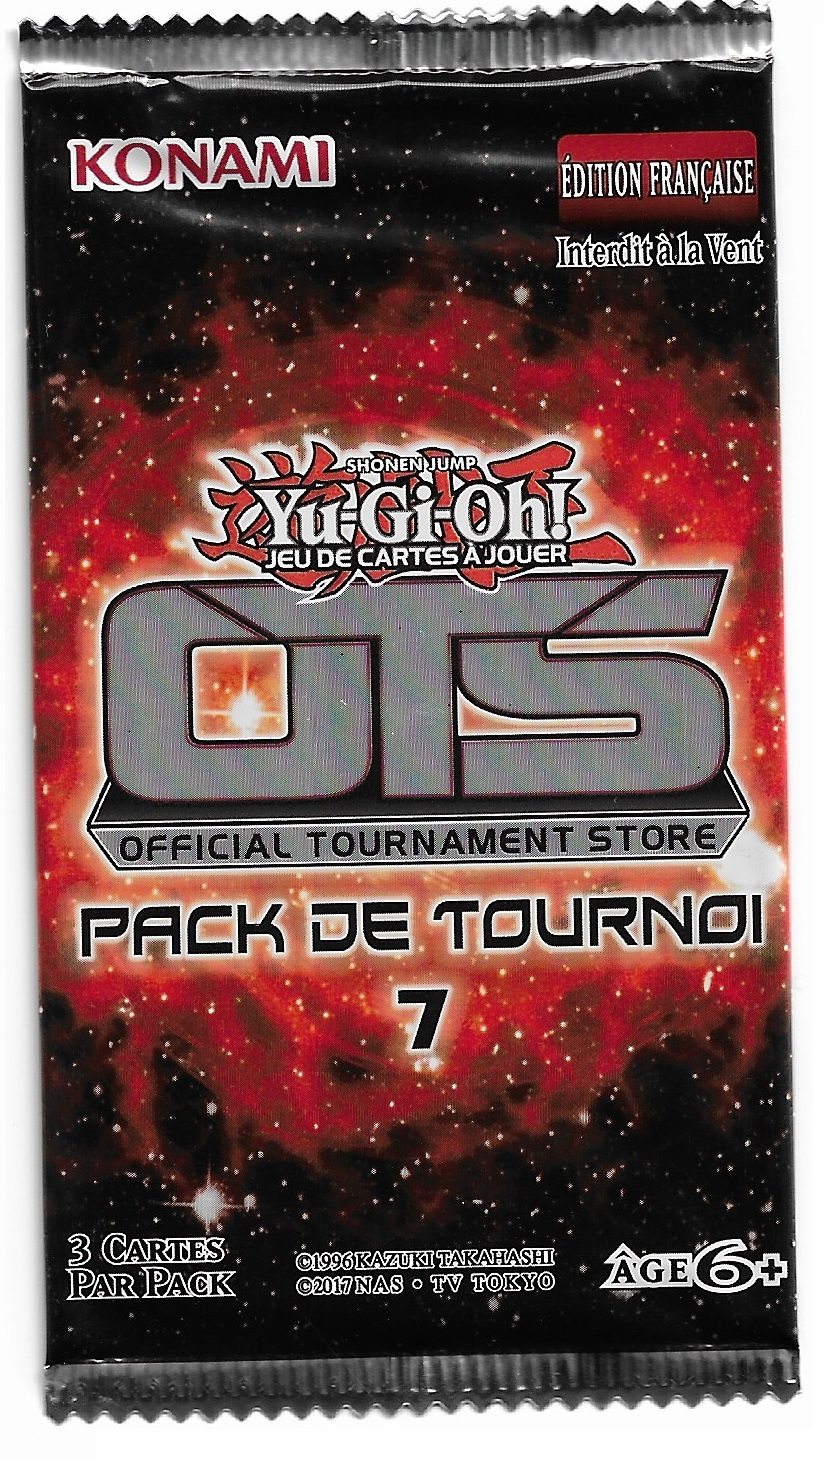 OTS Tournament Pack 7